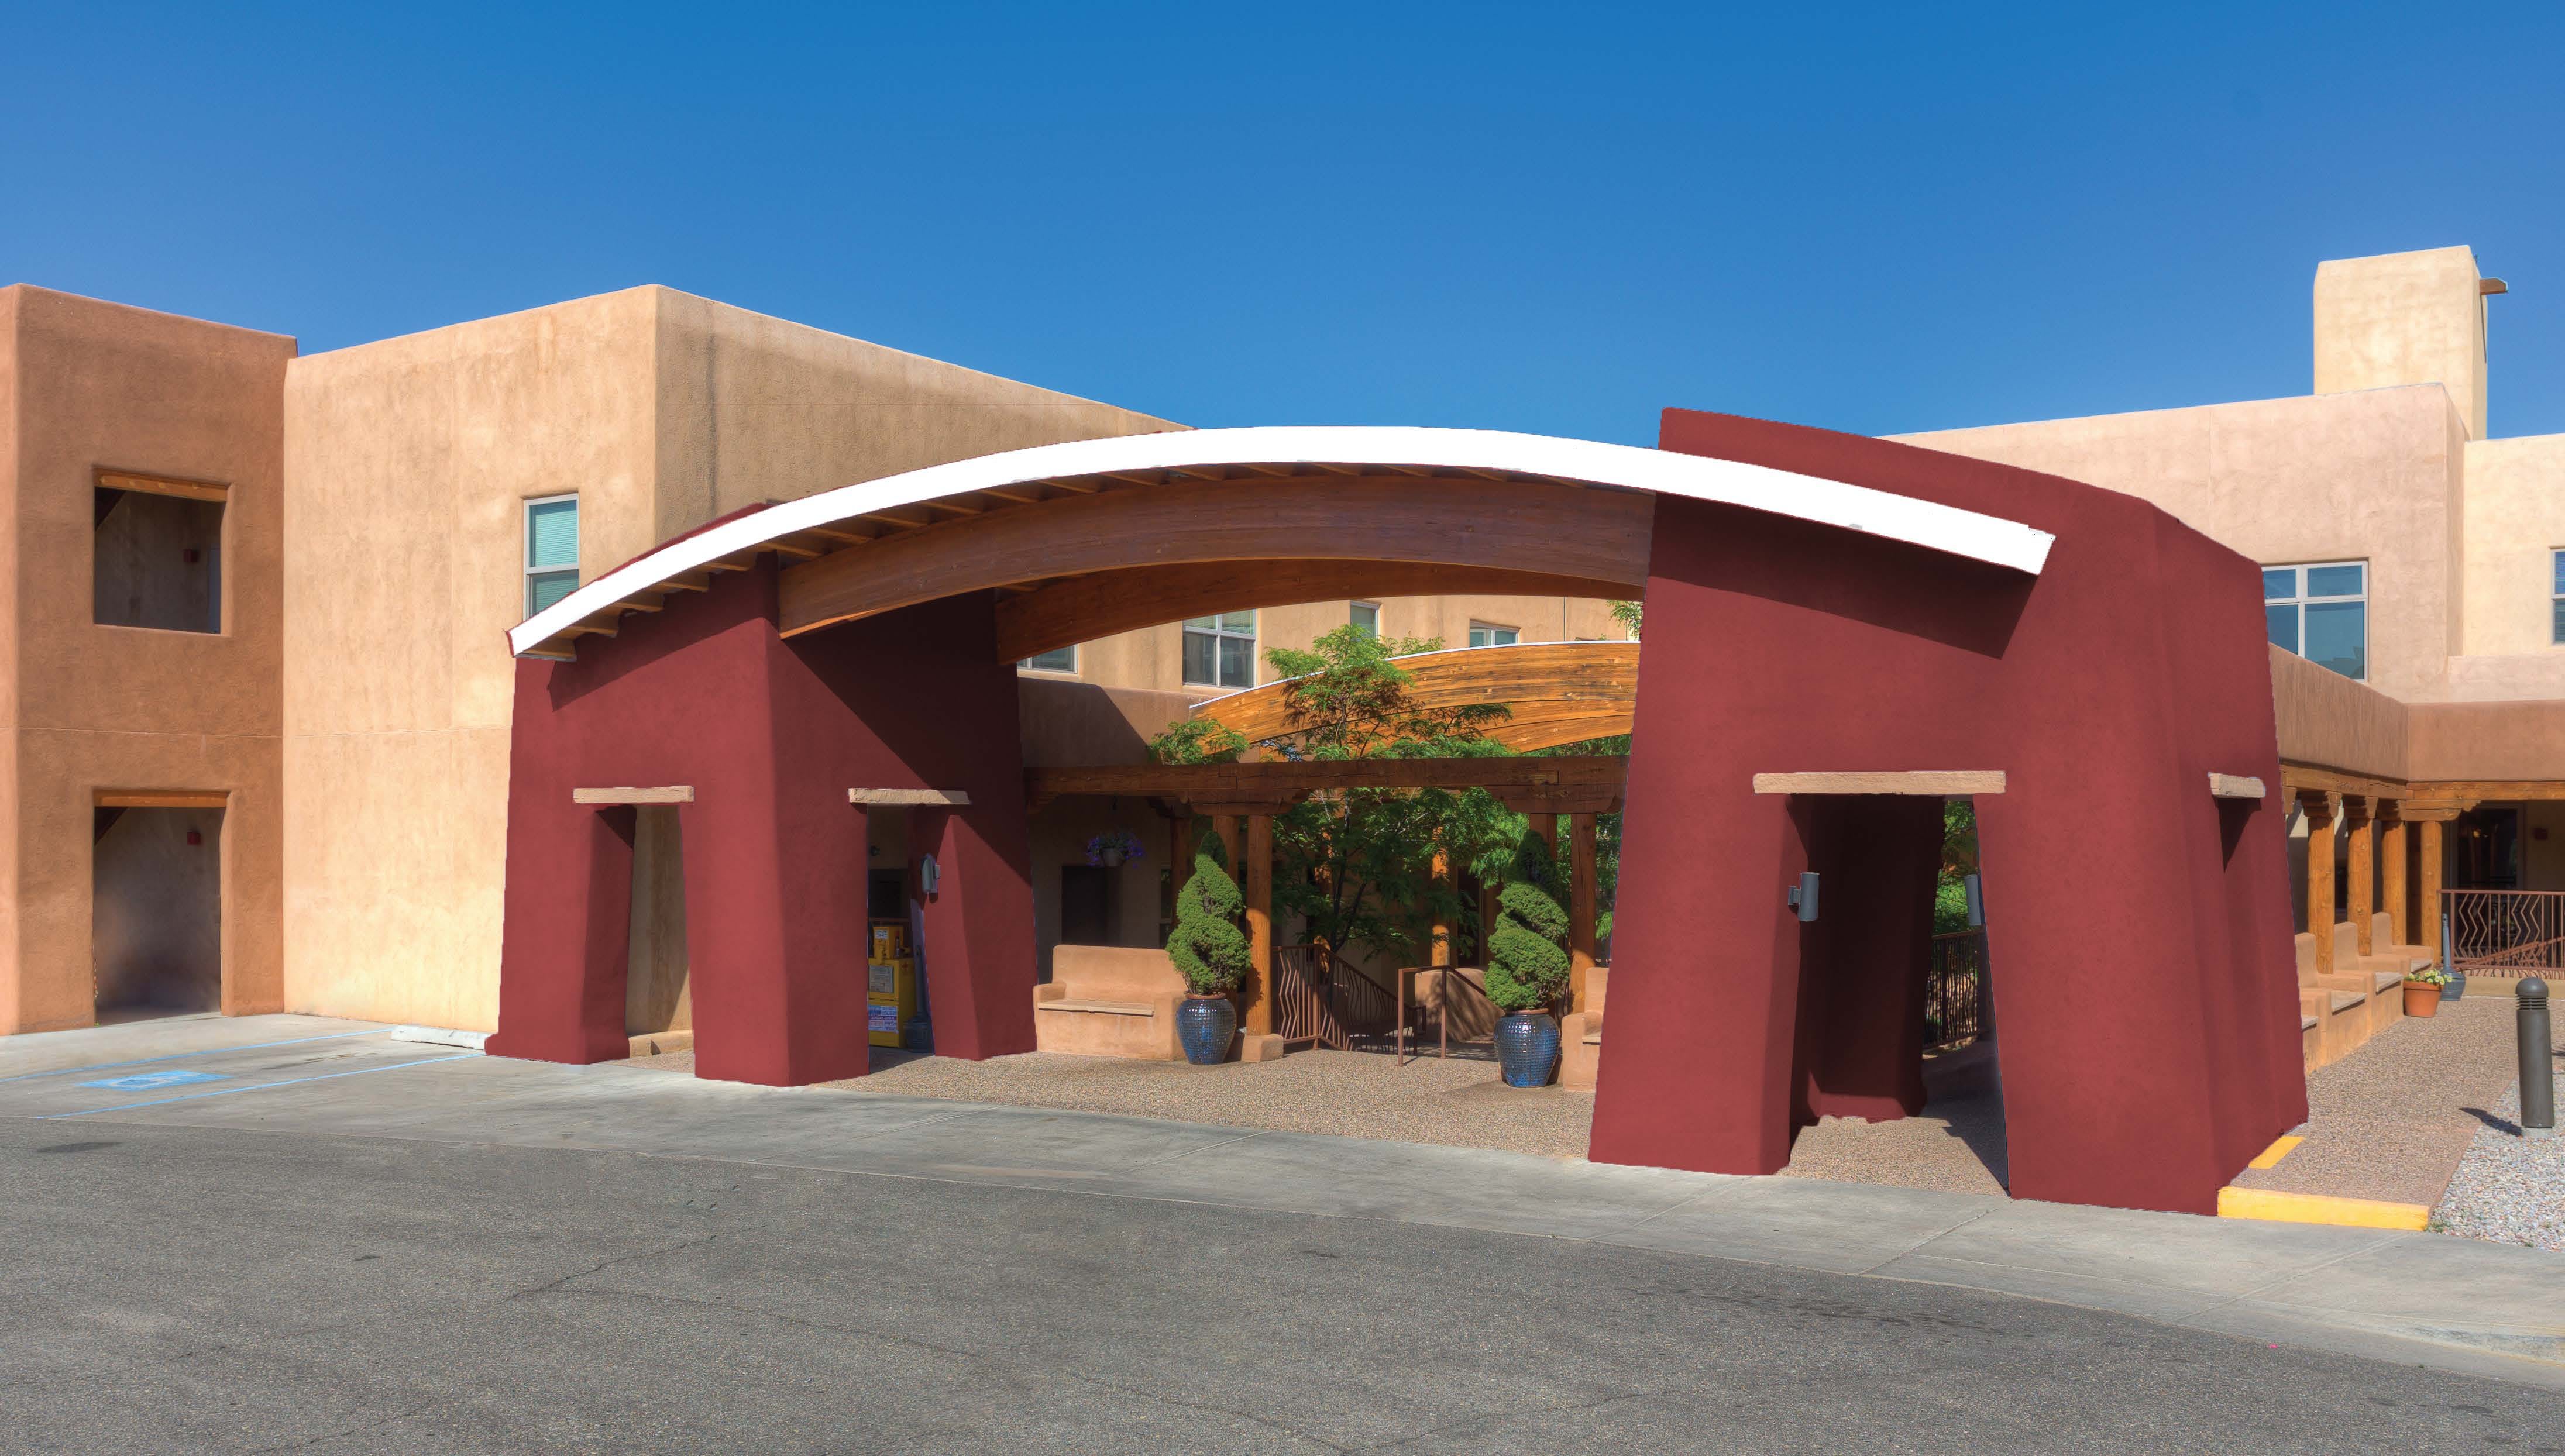 The Montecito Santa Fe community entrance